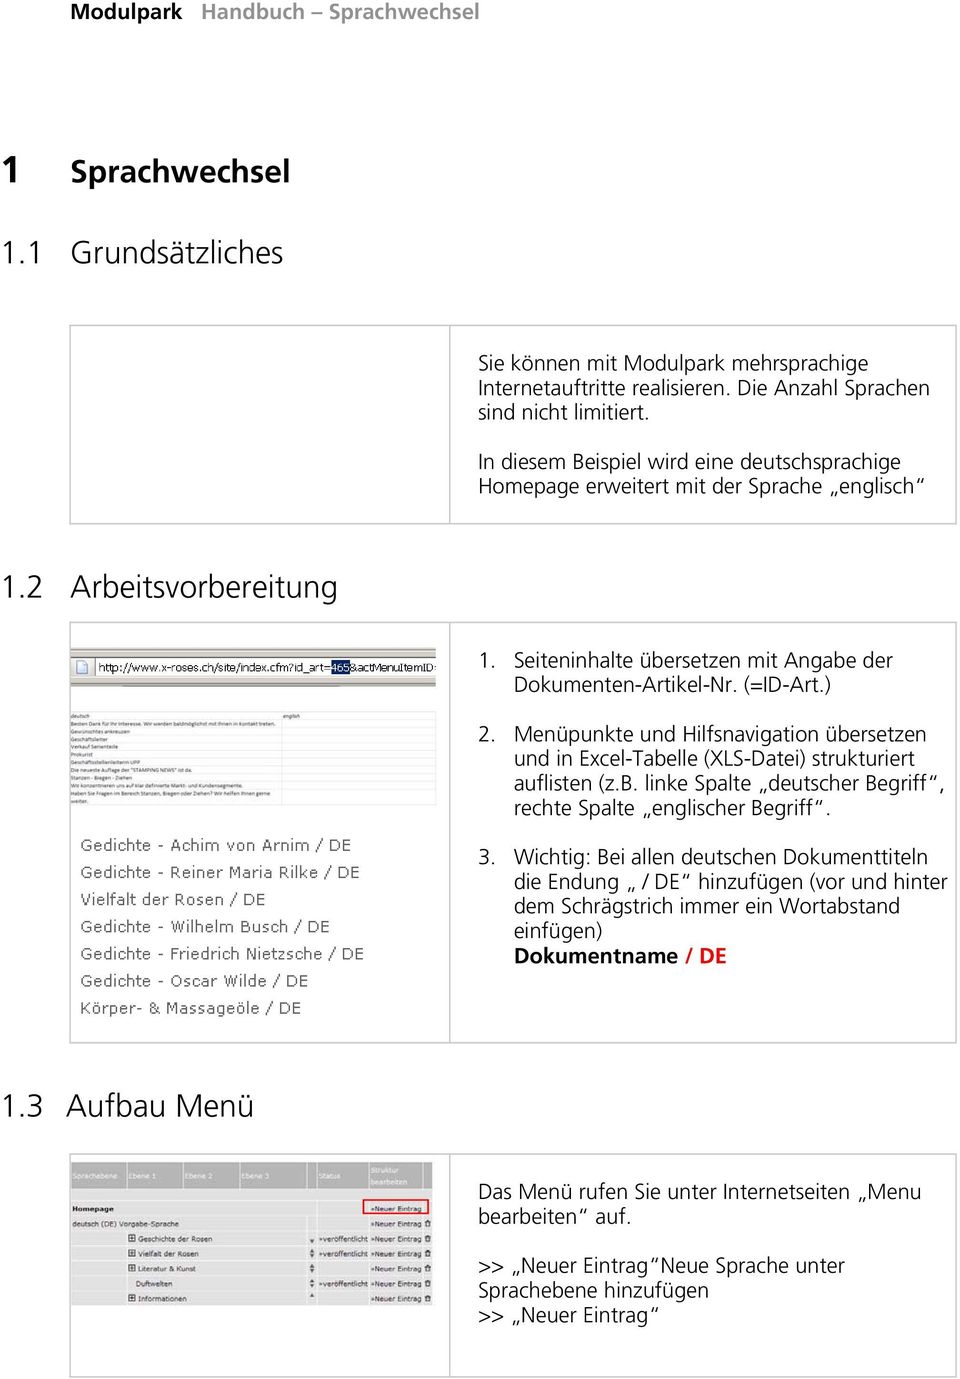 Menüpunkte und Hilfsnavigation übersetzen und in Excel-Tabelle (XLS-Datei) strukturiert auflisten (z.b. linke Spalte deutscher Begriff, rechte Spalte englischer Begriff. 3.